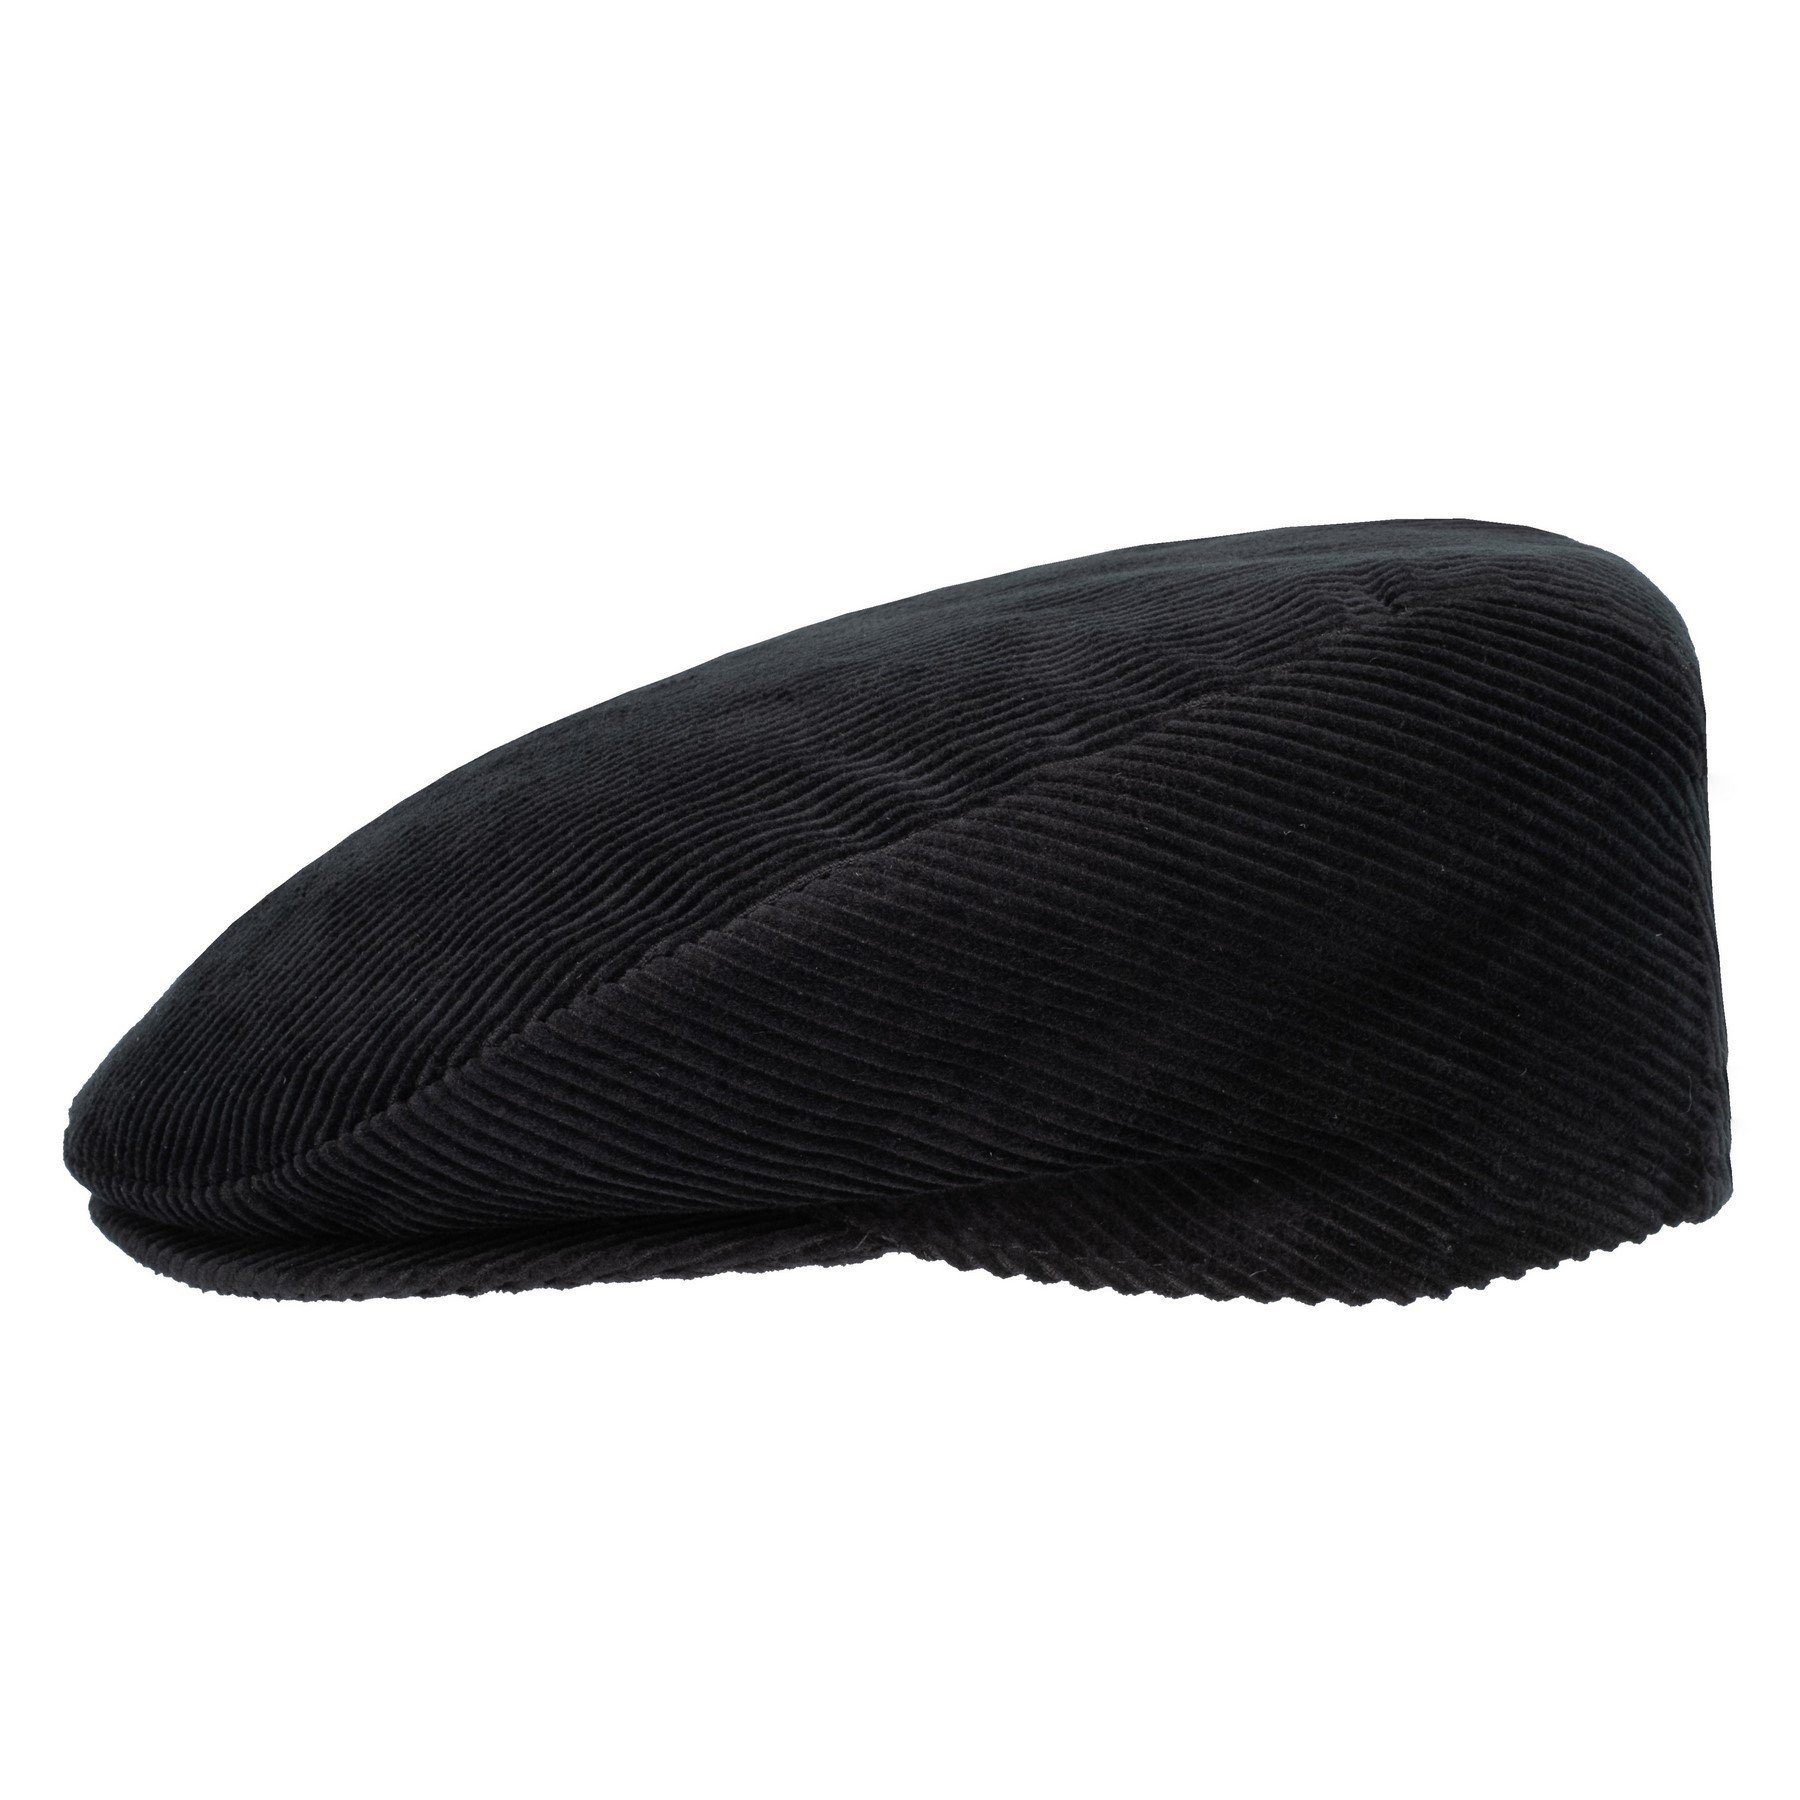 HatBee Flat Cap »Schirmmütze Schiebermütze Baumwolle in Cord« Cordmütze  online kaufen | OTTO